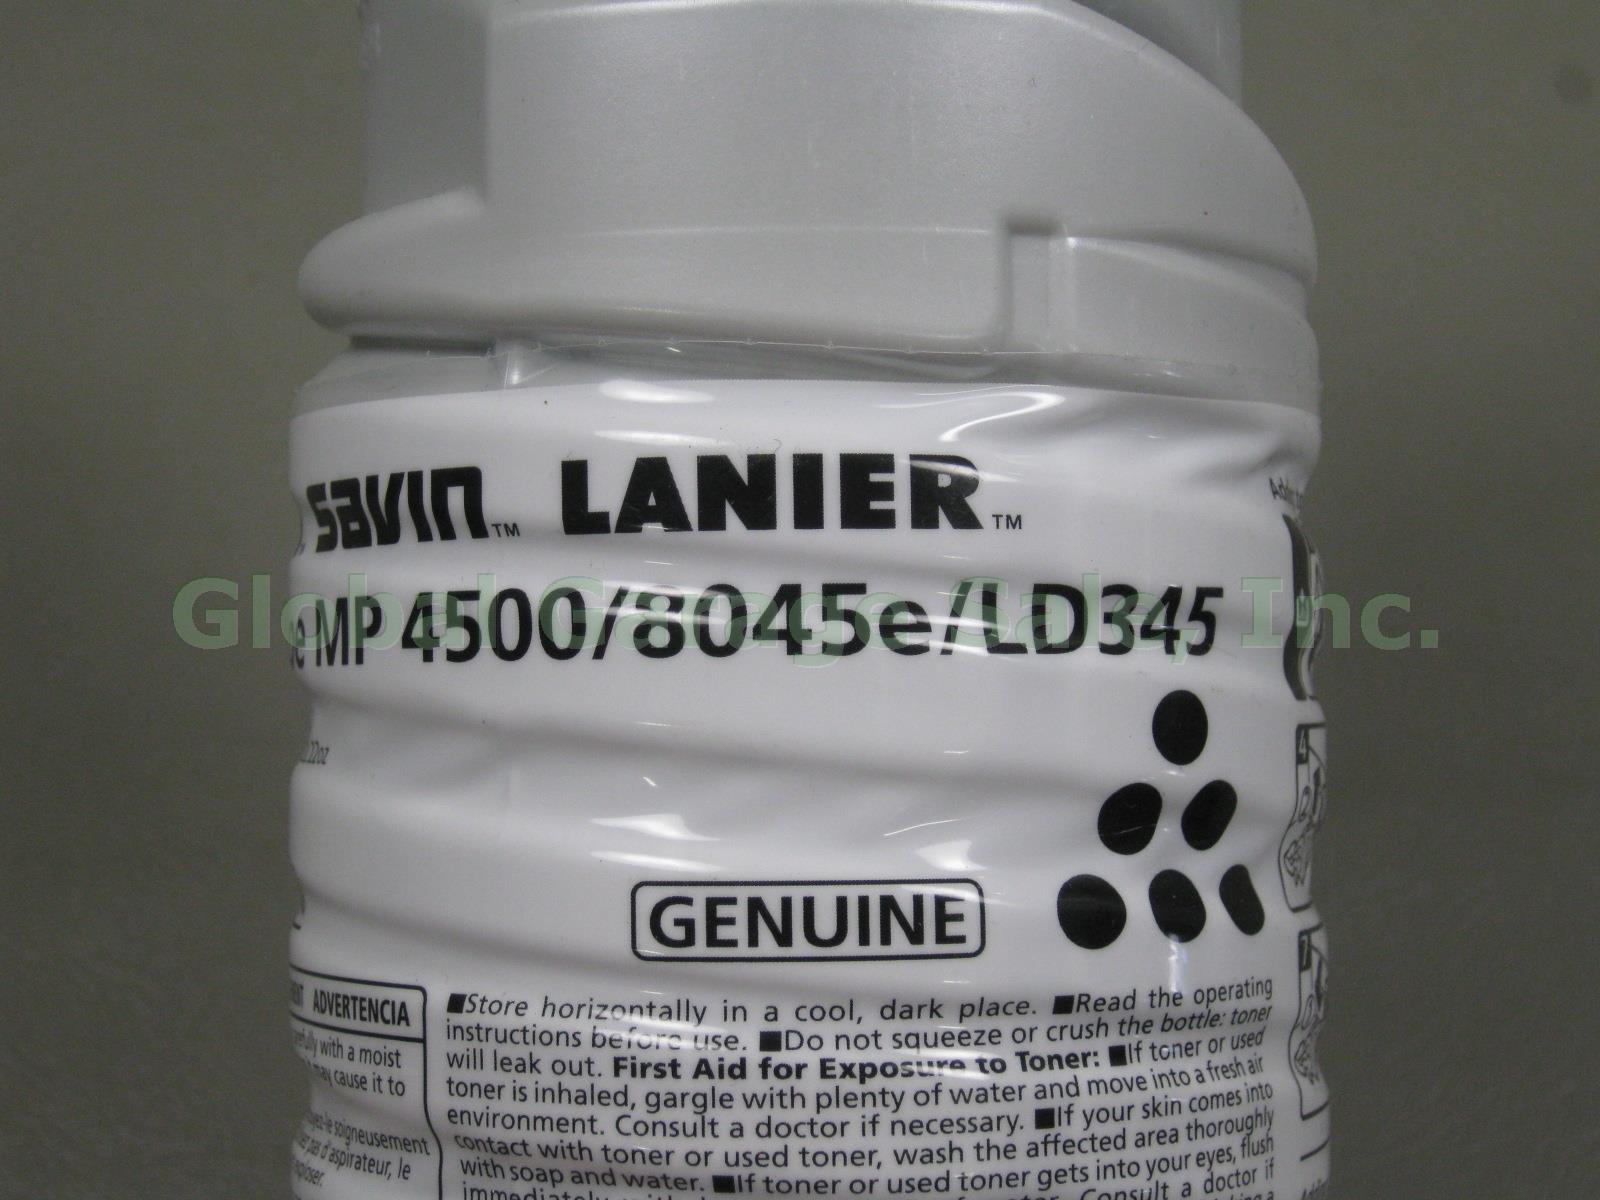 9 Ricoh Savin Lanier Toner Type MP4500 8045e LD345 Black EDP Code 841346 Lot NR! 2